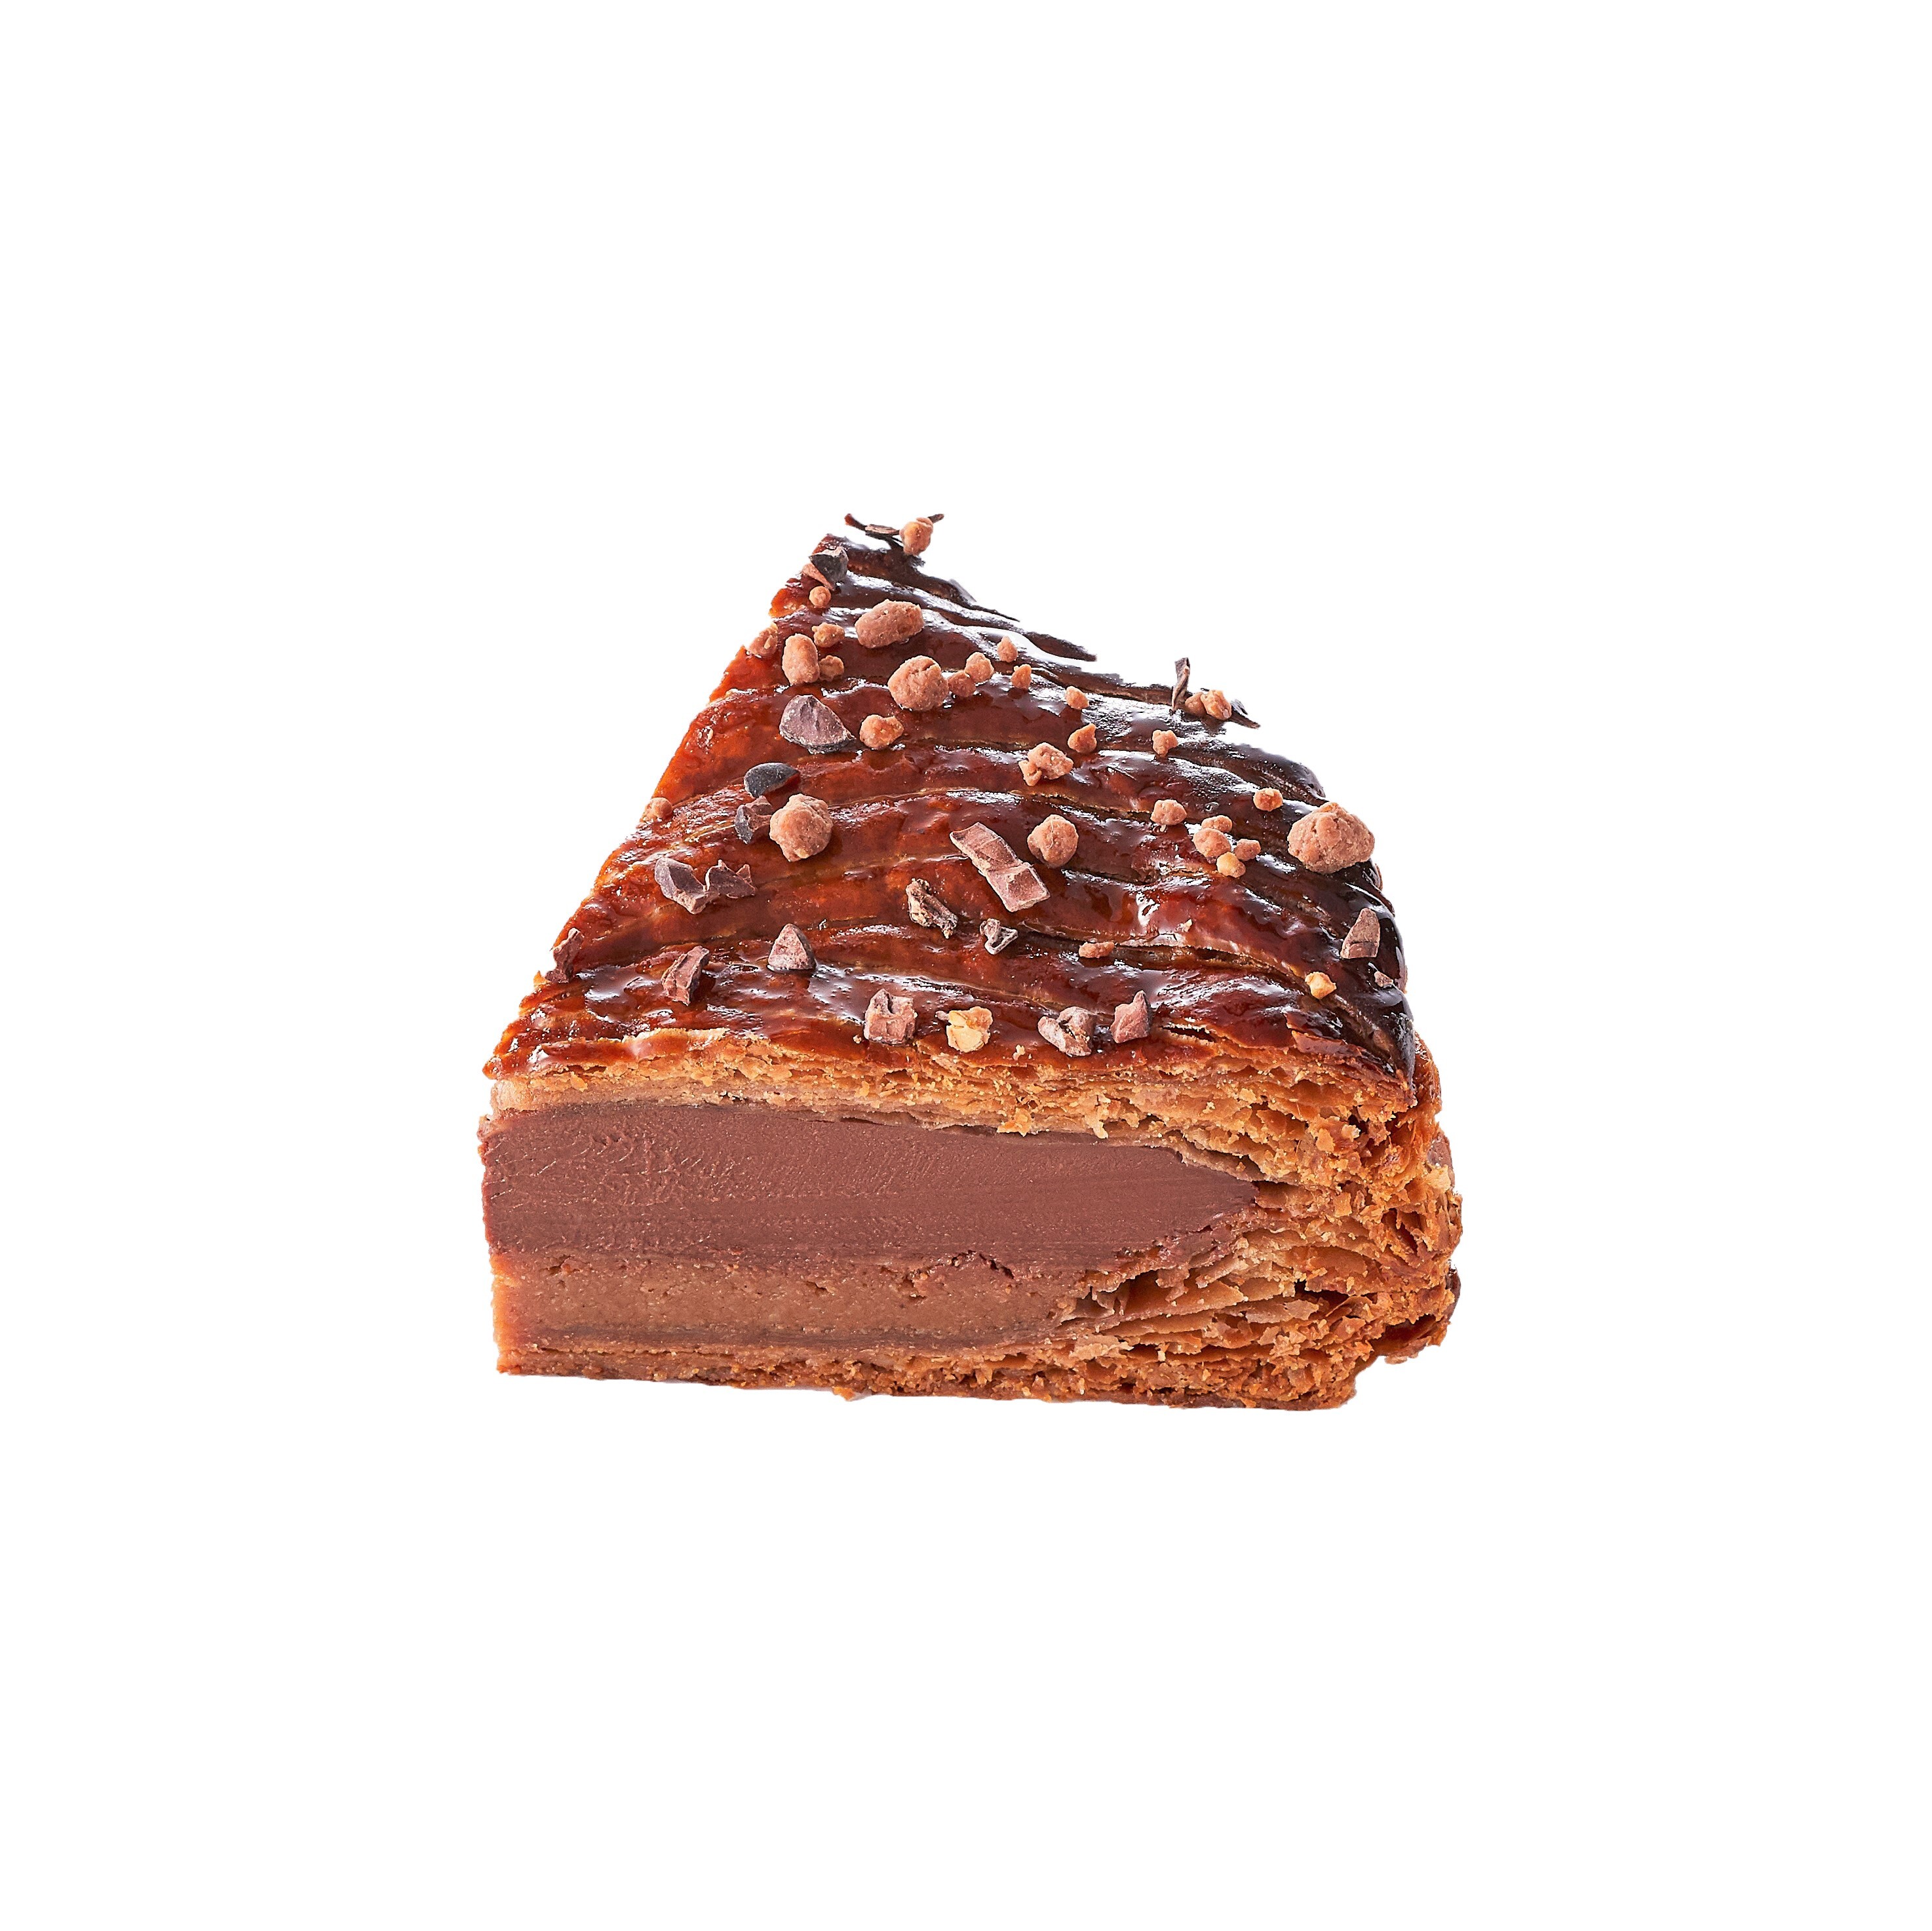 リンツ 新年のお菓子 ガレット デ ロワ が今年も登場 チョコレートの贅を尽くした ダブルショコラ を11月1日から予約受付 リンツ シュプルングリージャパン株式会社のプレスリリース